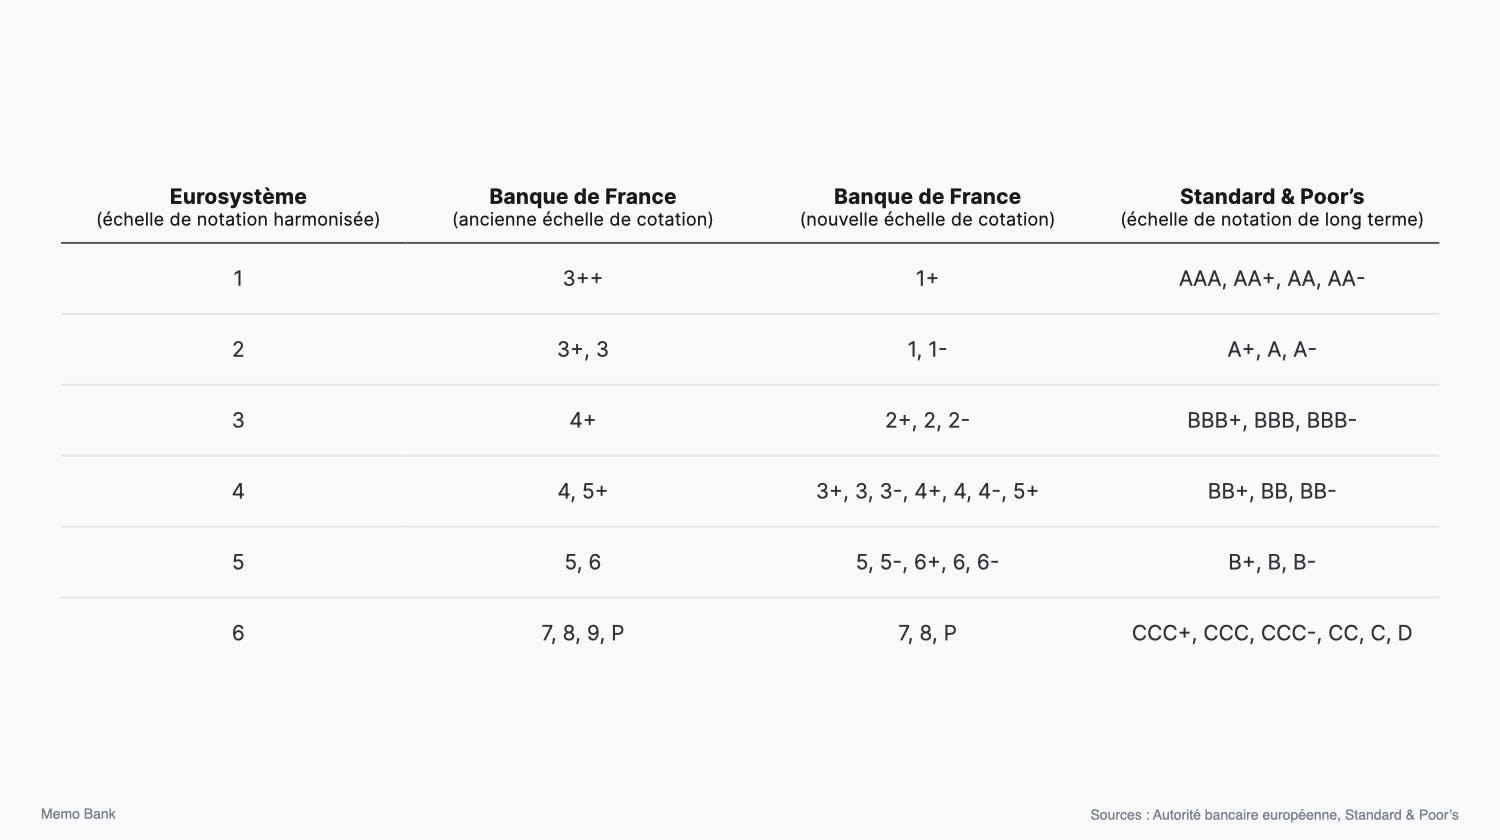 Correspondance entre l’échelle de notation de l’Eurosystème et les échelles de notation de la Banque de France et de Standard & Poor’s.